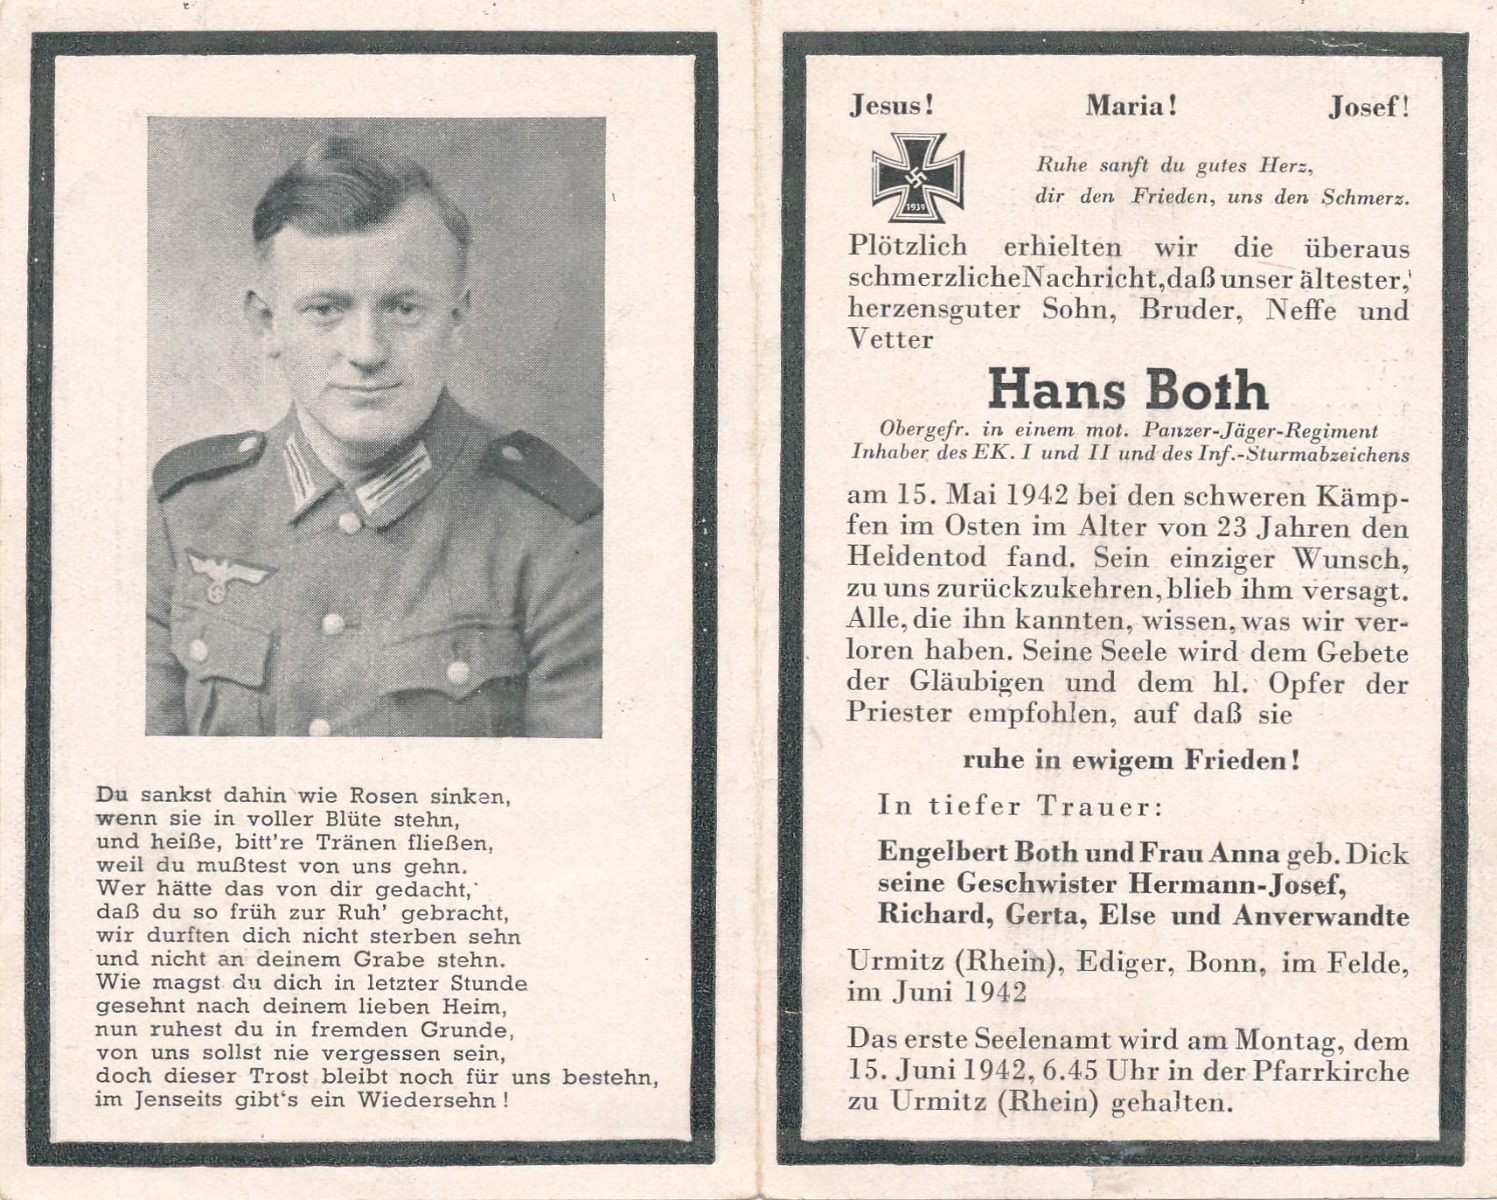 GERMAN WWI DEATH CARD FOR PANZERJAGER OBERGRUPPENFUHRER HANS BOTH